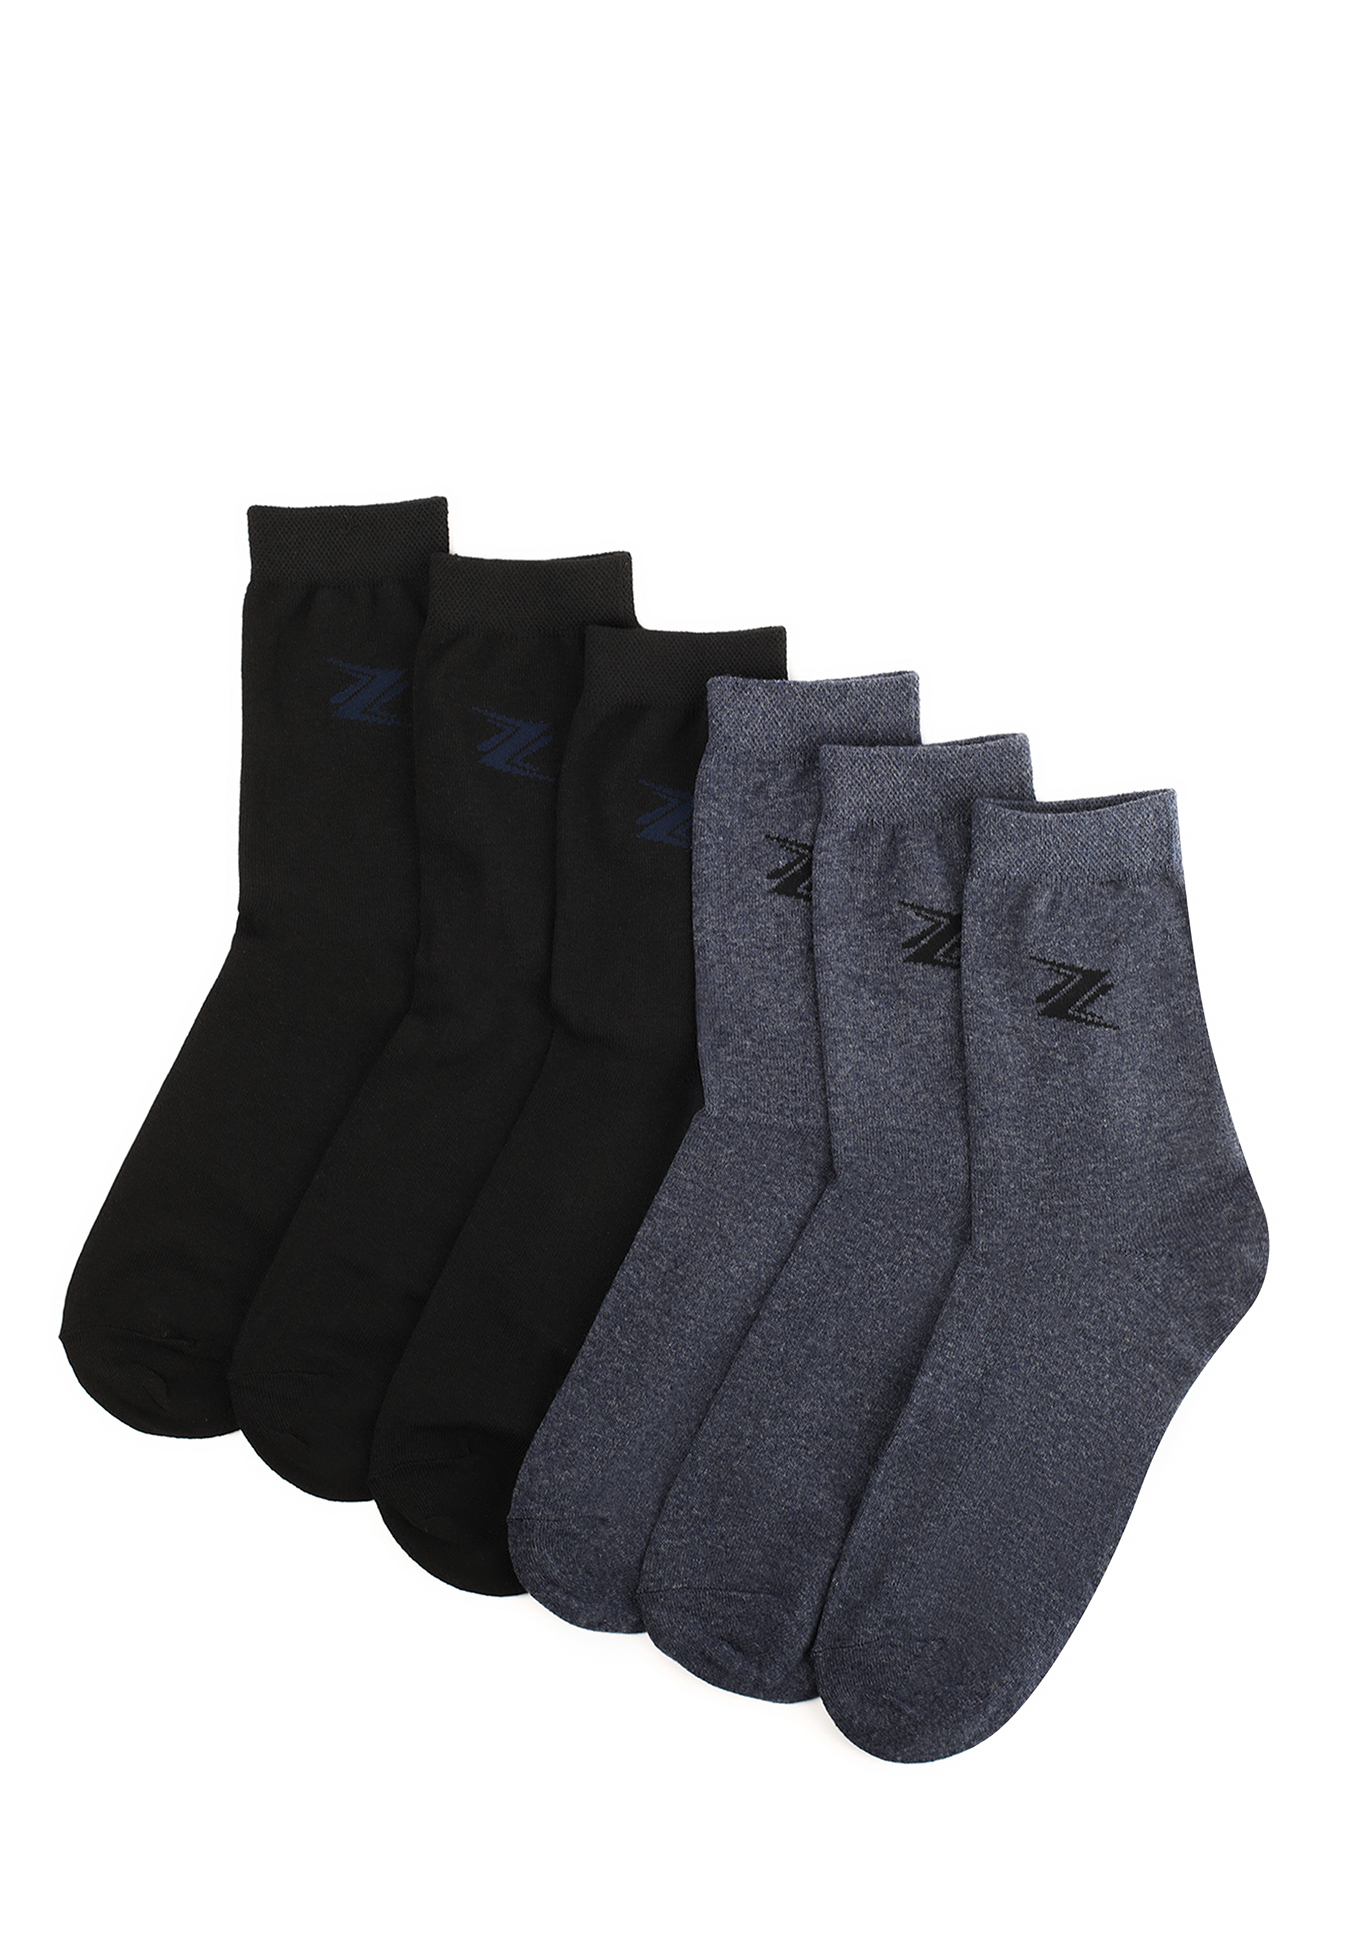 Комплект мужских носков с рисунком, 6 пар, цвет в ассортименте, размер 27 - фото 1